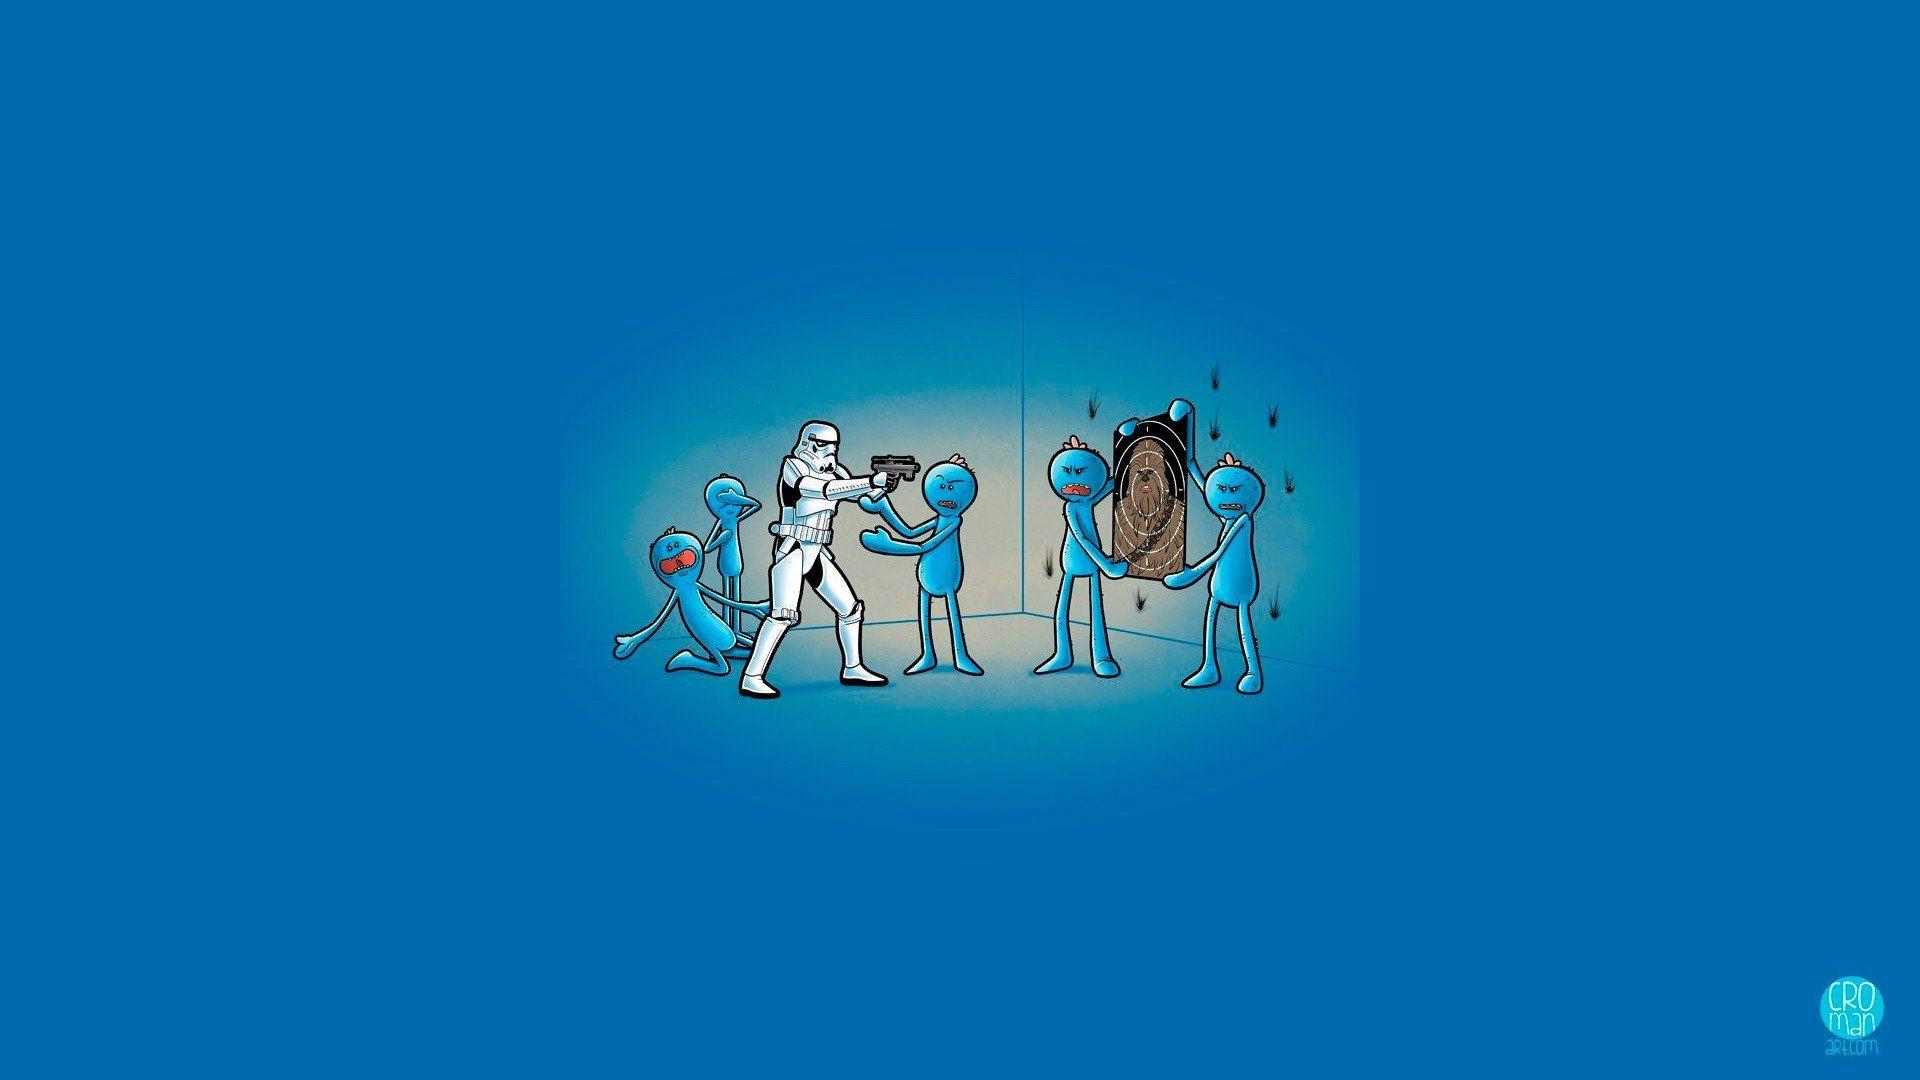 stormtrooper, Chewbacca, Mr. Meeseeks, Star Wars, Humor, Blue